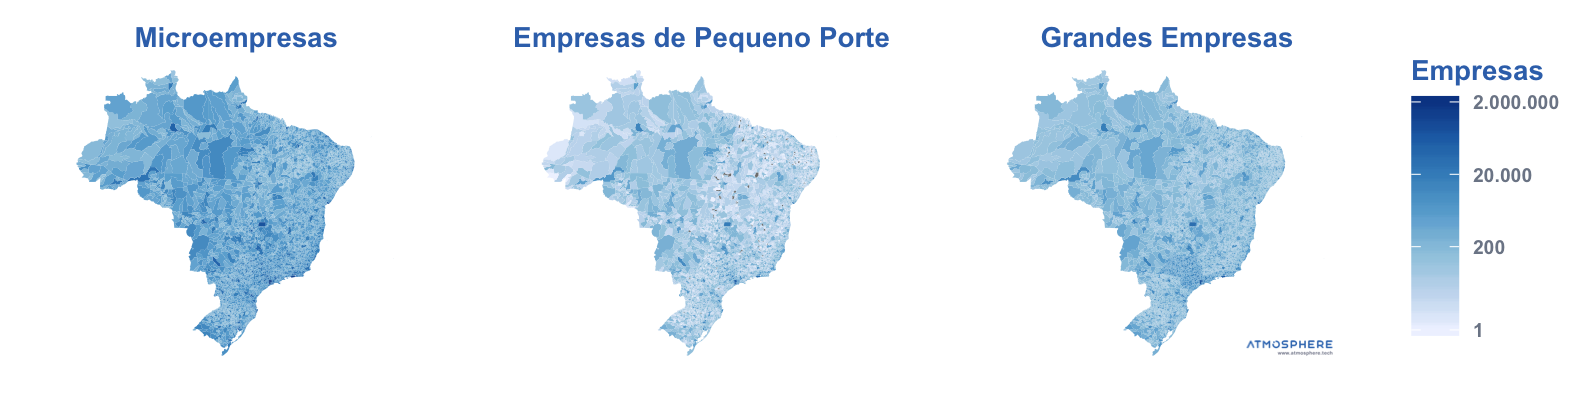 Oportunidados Porte das Empresas Ativas por Município no Brasil